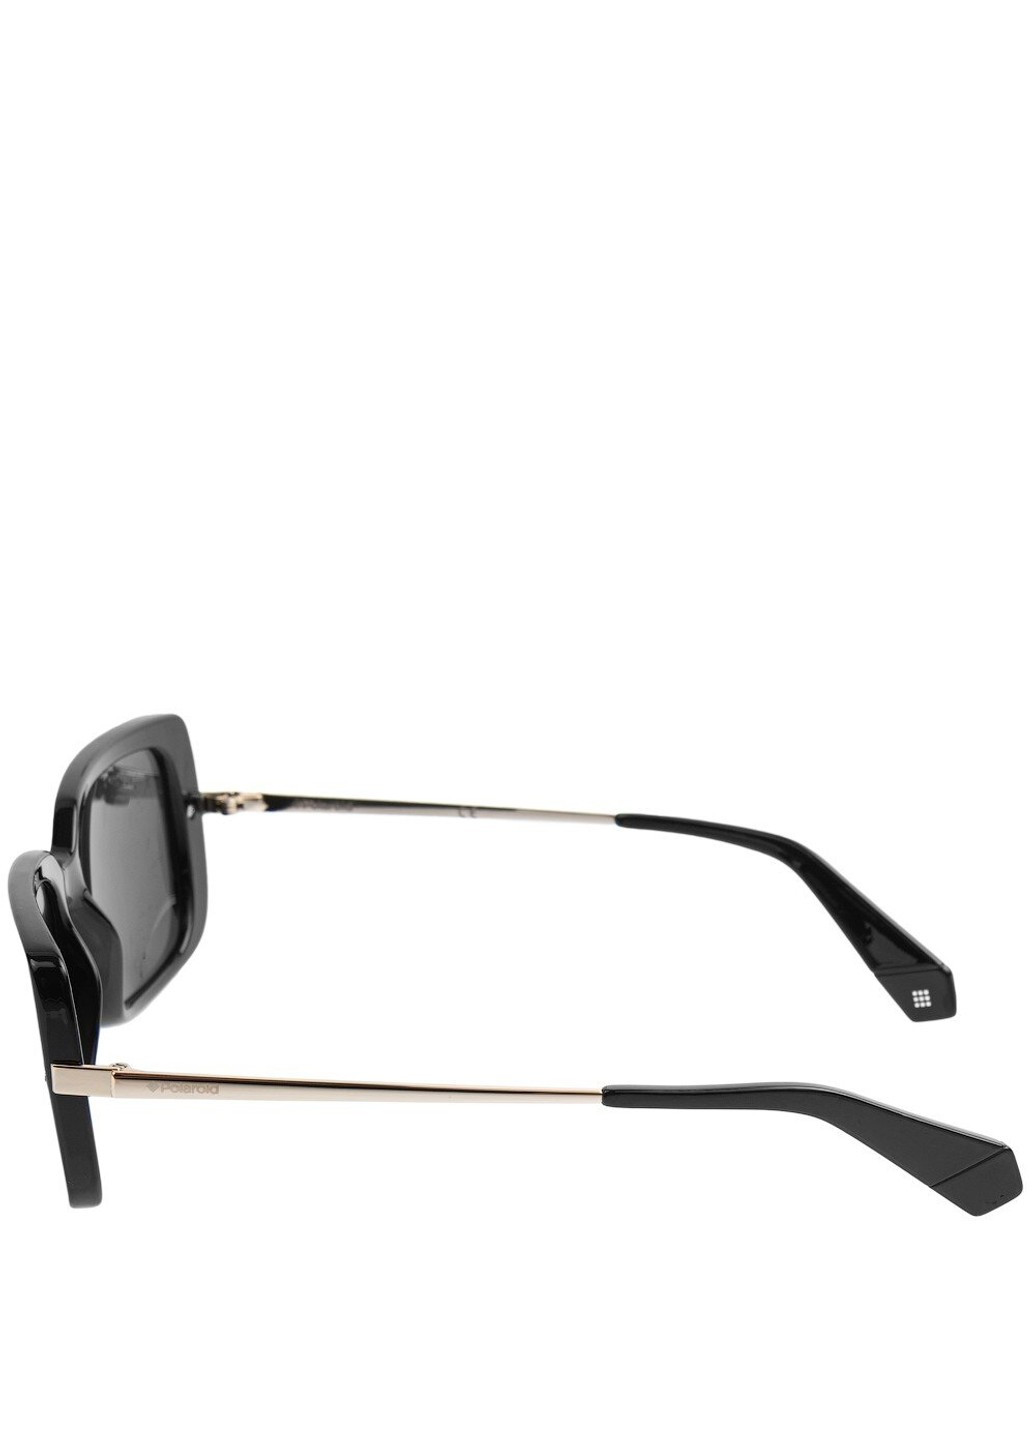 Солнцезащитные очки для женщин pld4075s-80756m9 Polaroid (262975735)